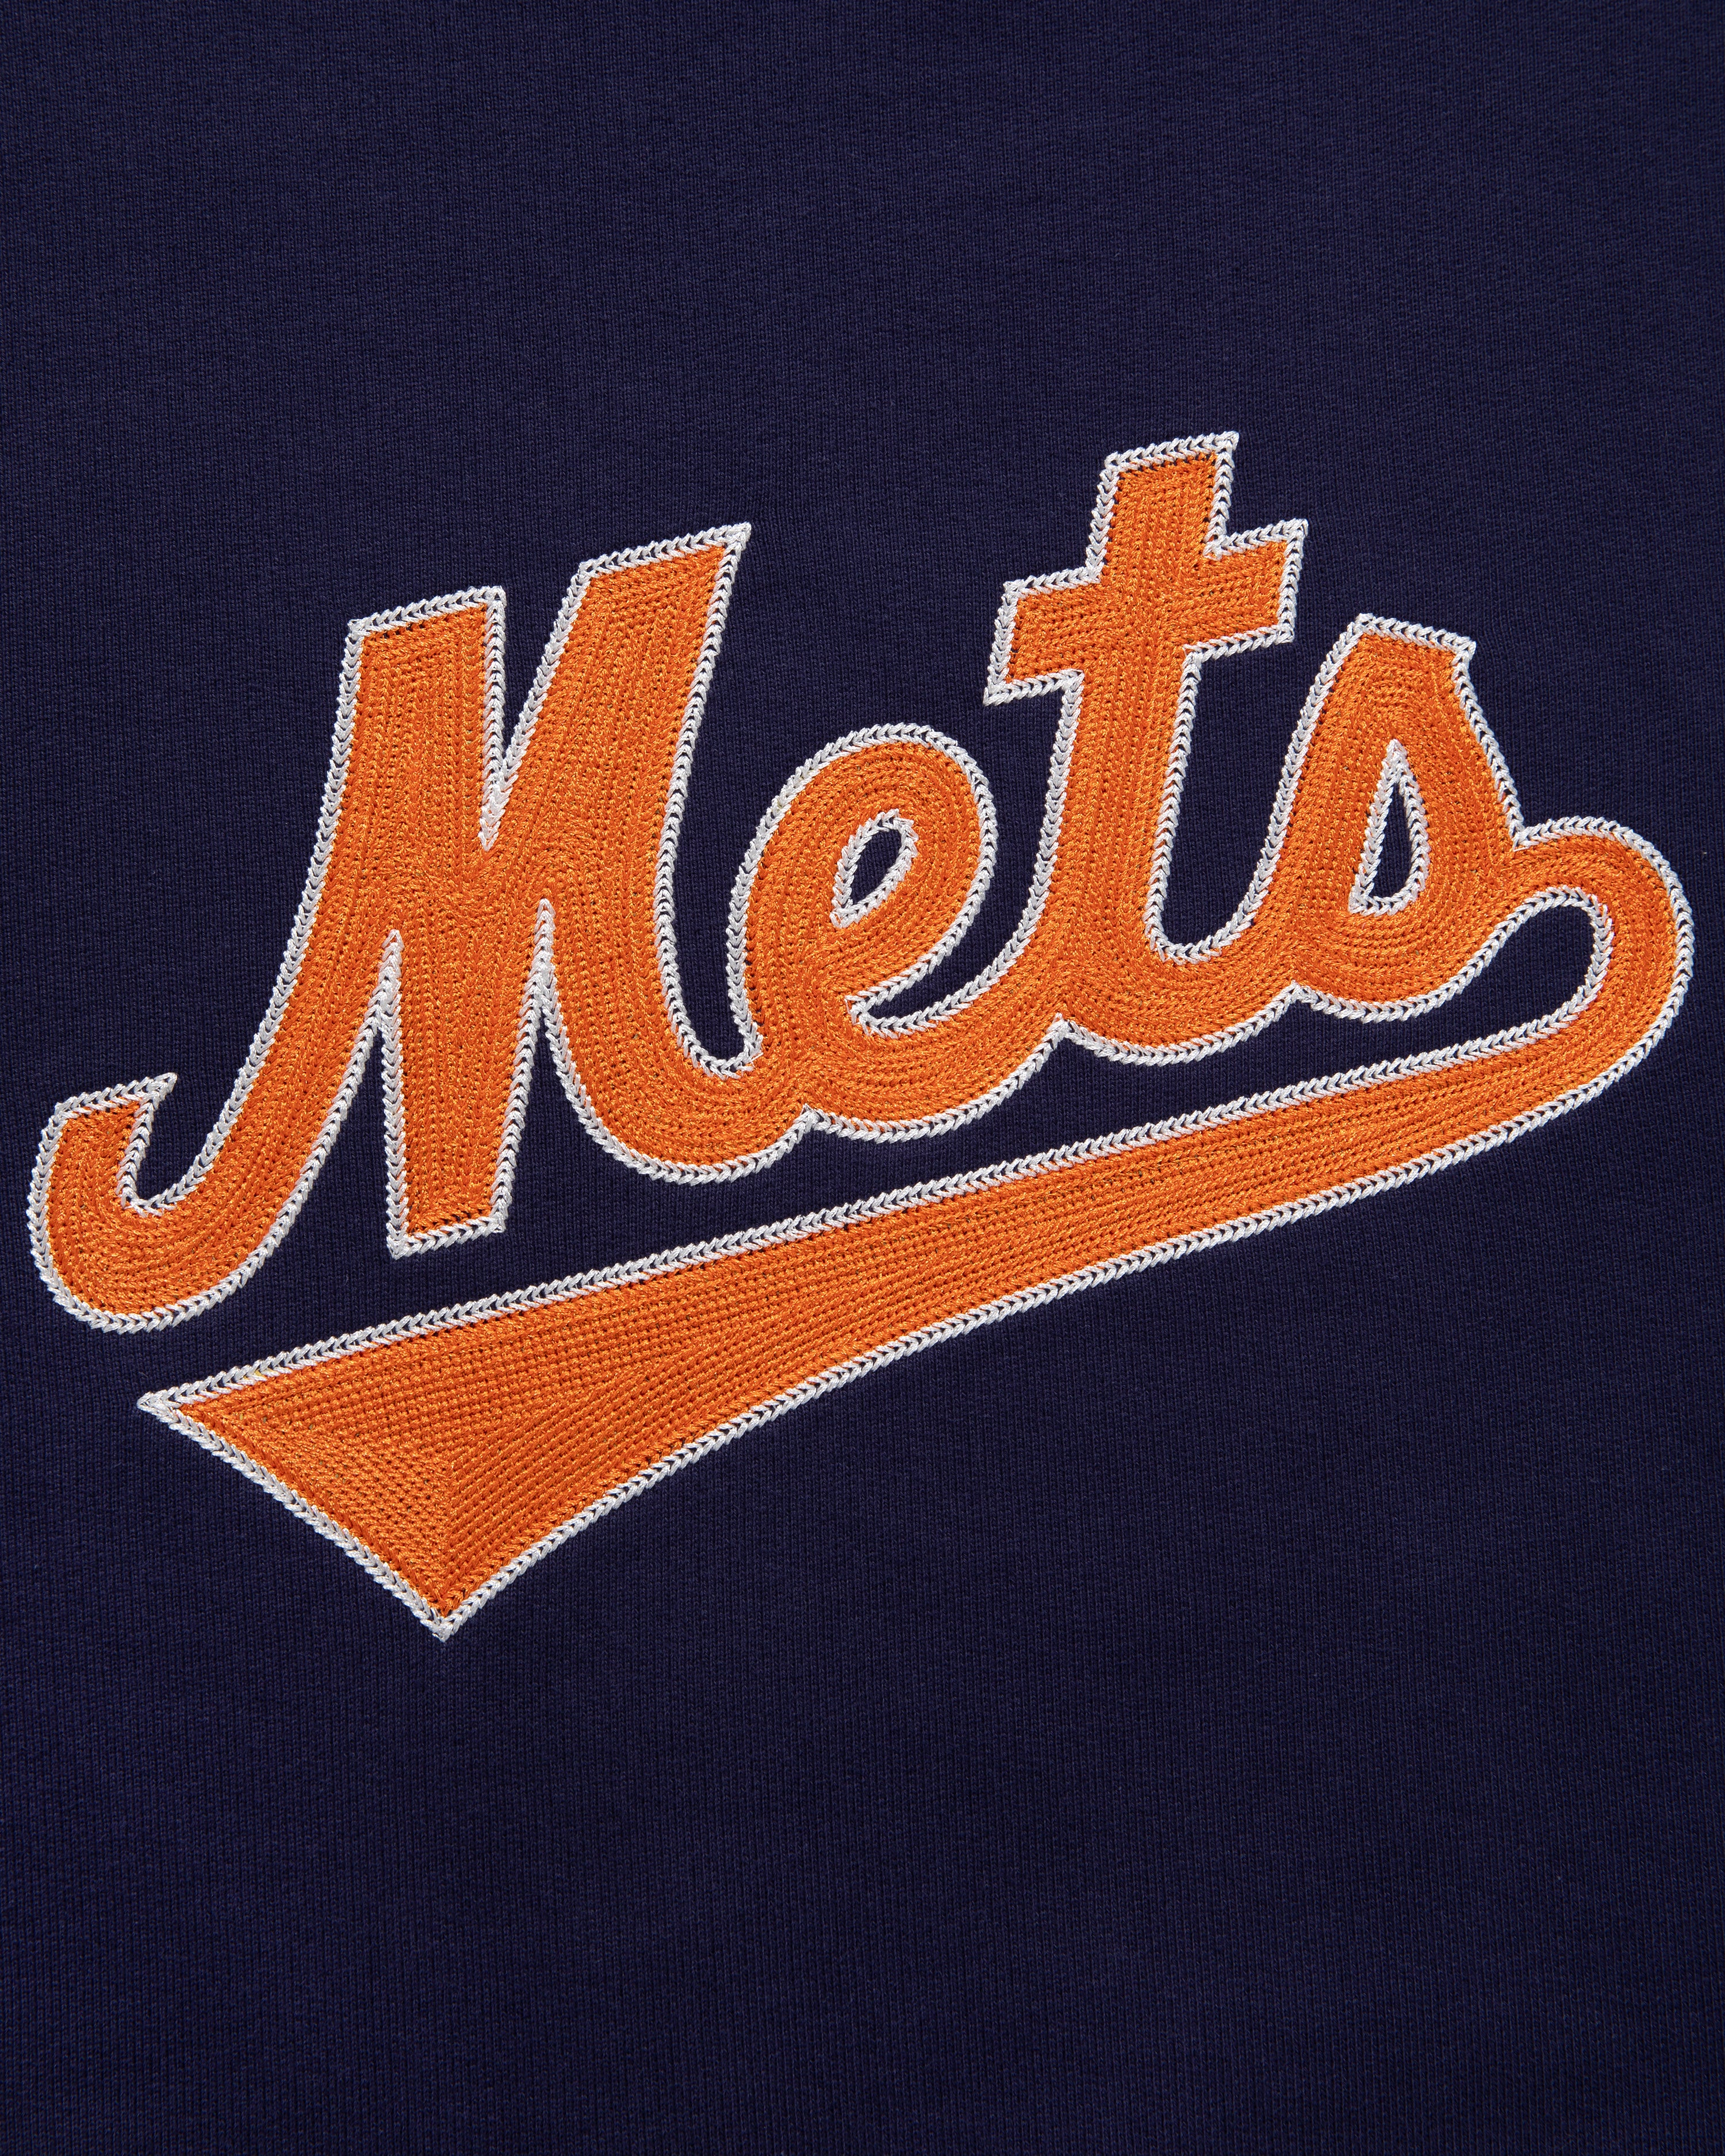 ALD / New York Mets Chainstitch Crewneck  Sweatshirt